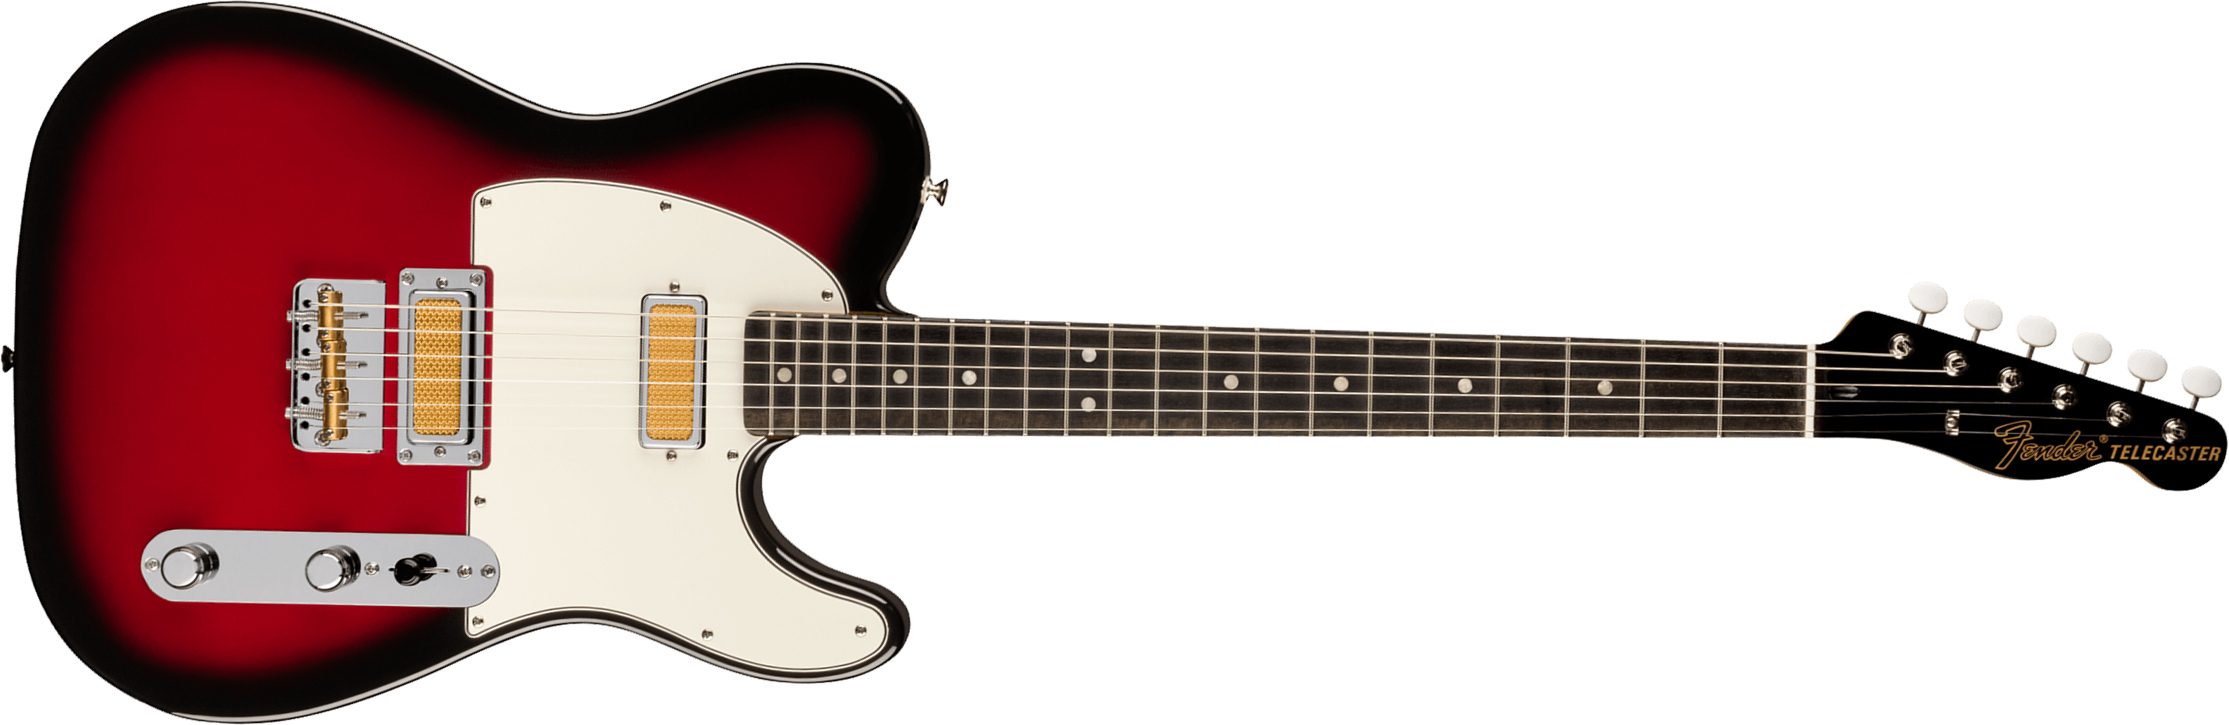 Fender Tele Gold Foil Ltd Mex 2mh Ht Eb - Candy Apple Burst - Guitarra eléctrica con forma de tel - Main picture